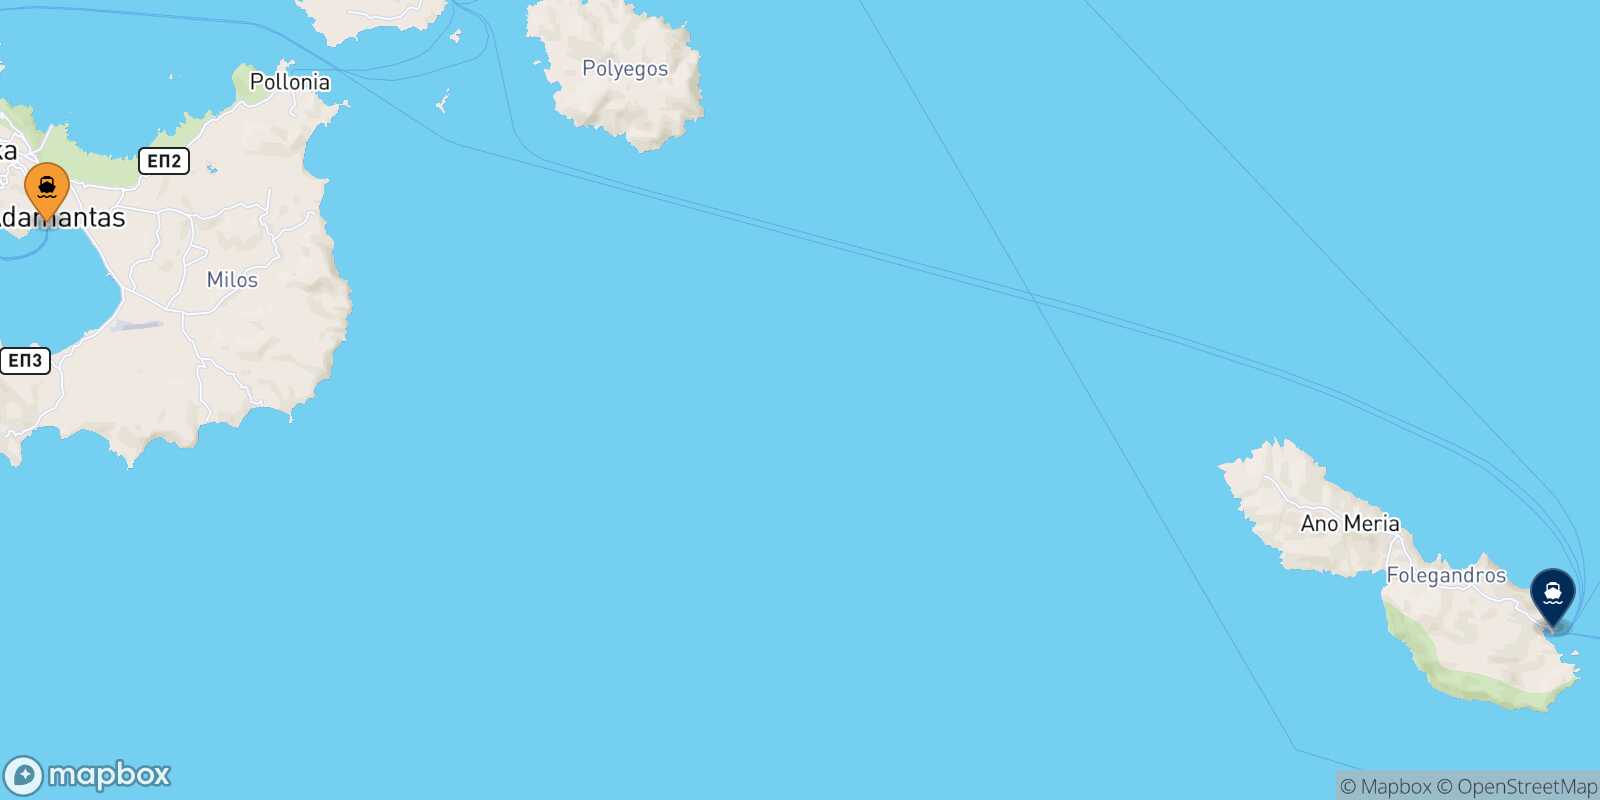 Mapa de la ruta Milos Folegandros